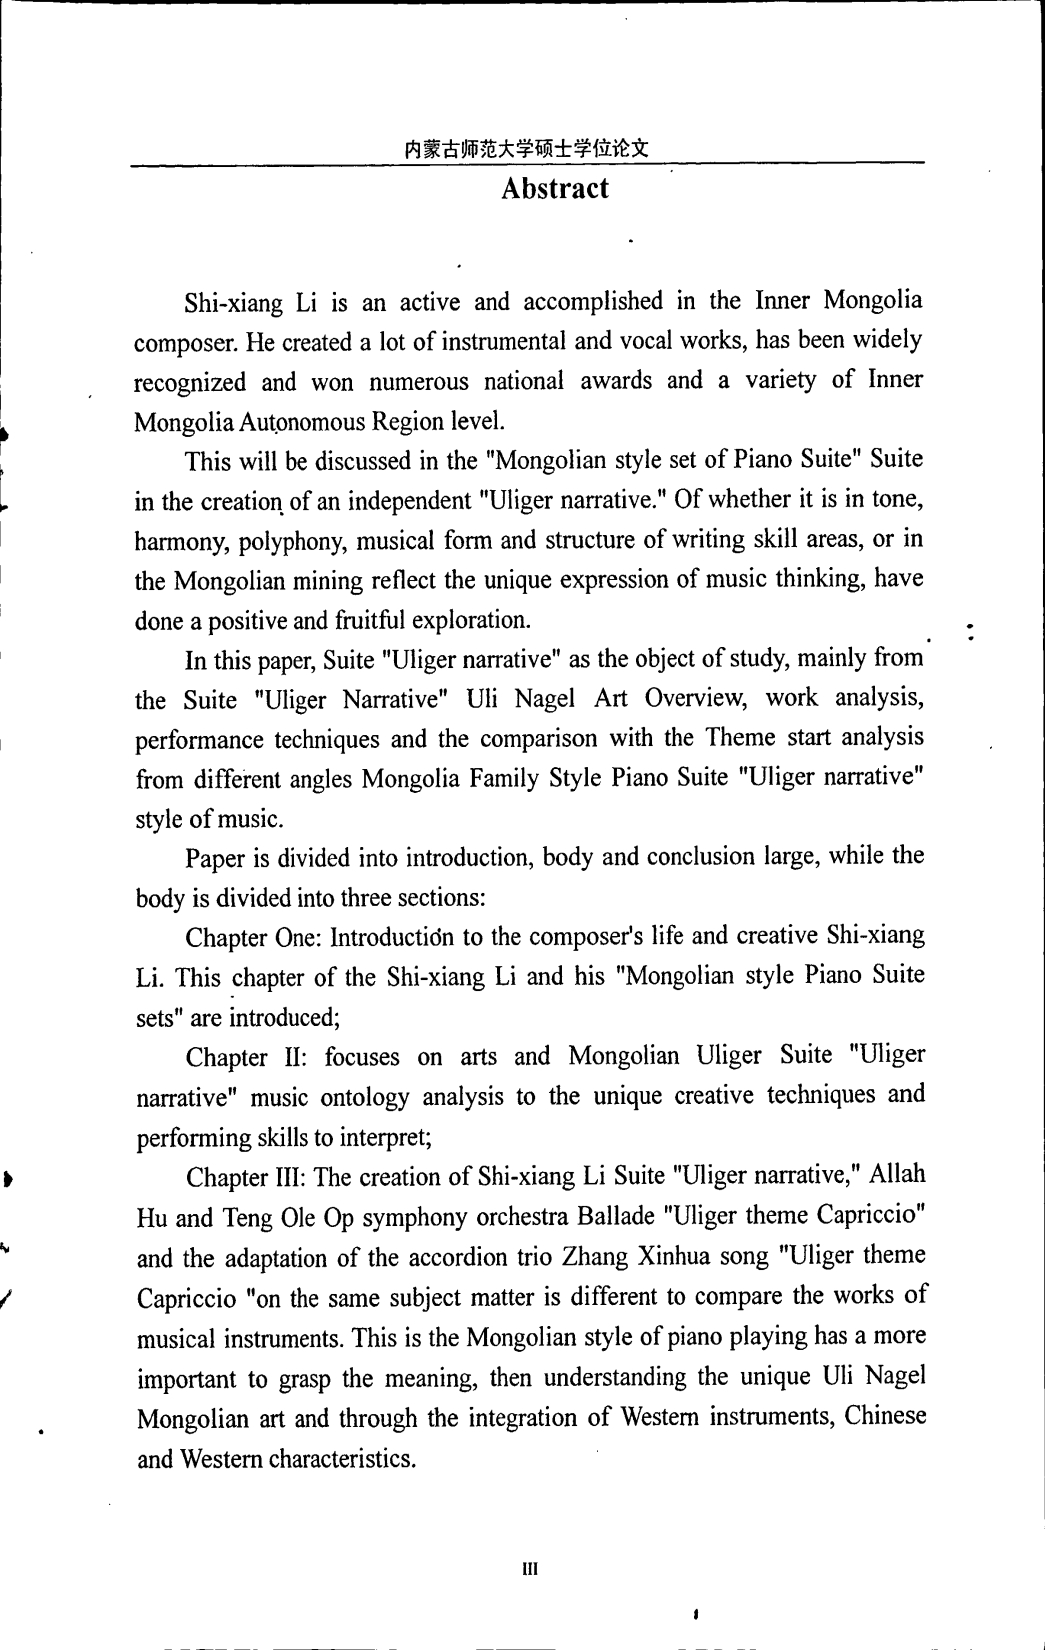 蒙古族风格钢琴组曲《乌力格尔叙事》研究_第5页